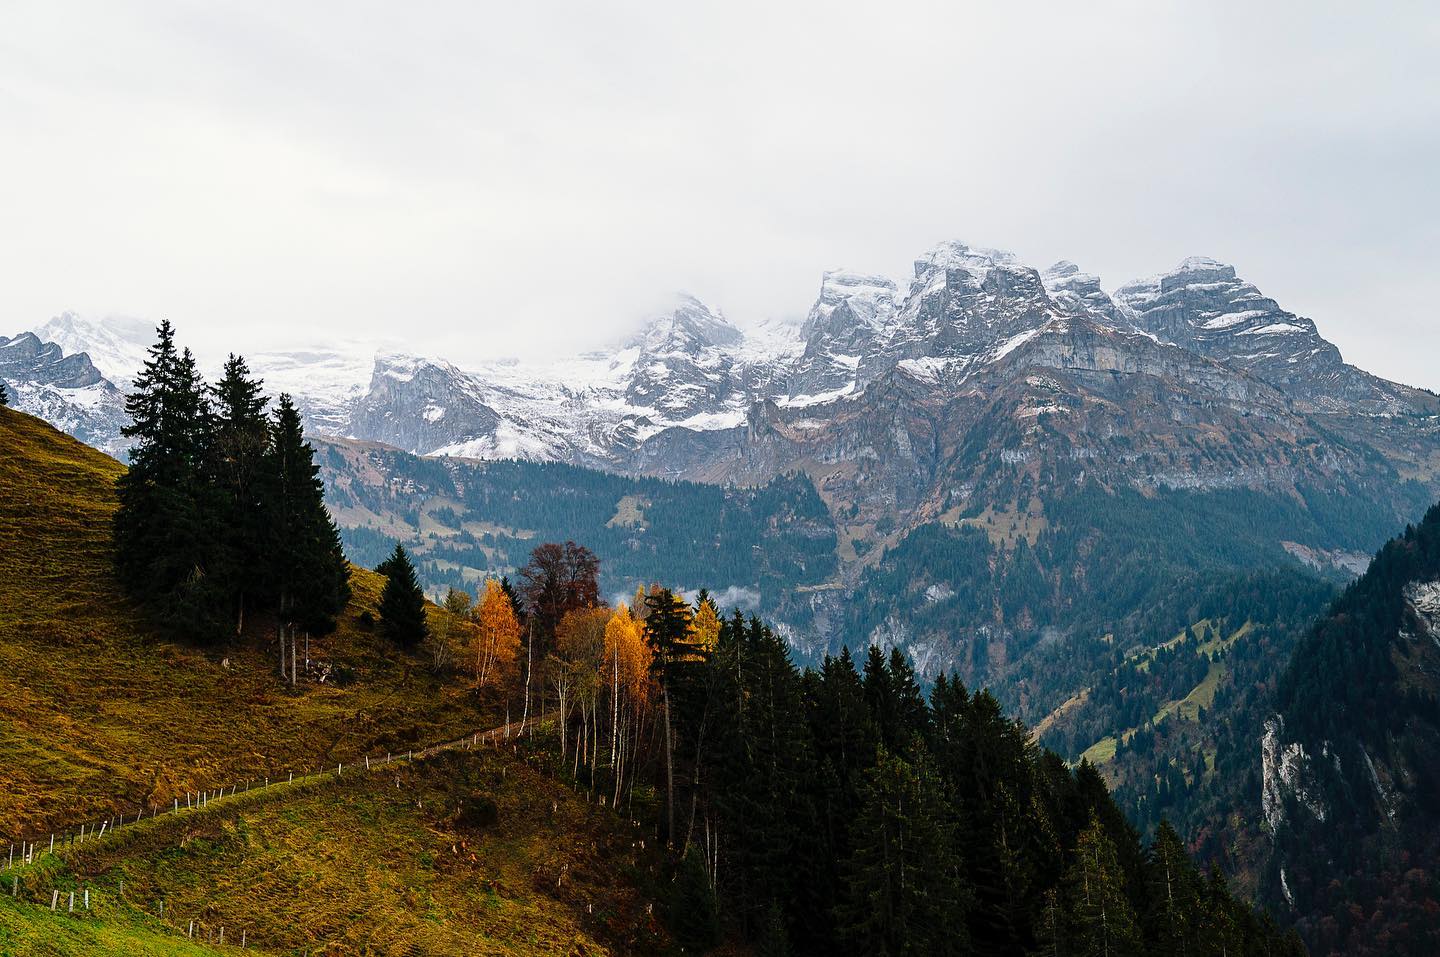 Archives. Suisse 2021.

#Switzerland #switzerlandwonderland #hike #outdoors #travel #cold #mountains #autumn #nikonz6